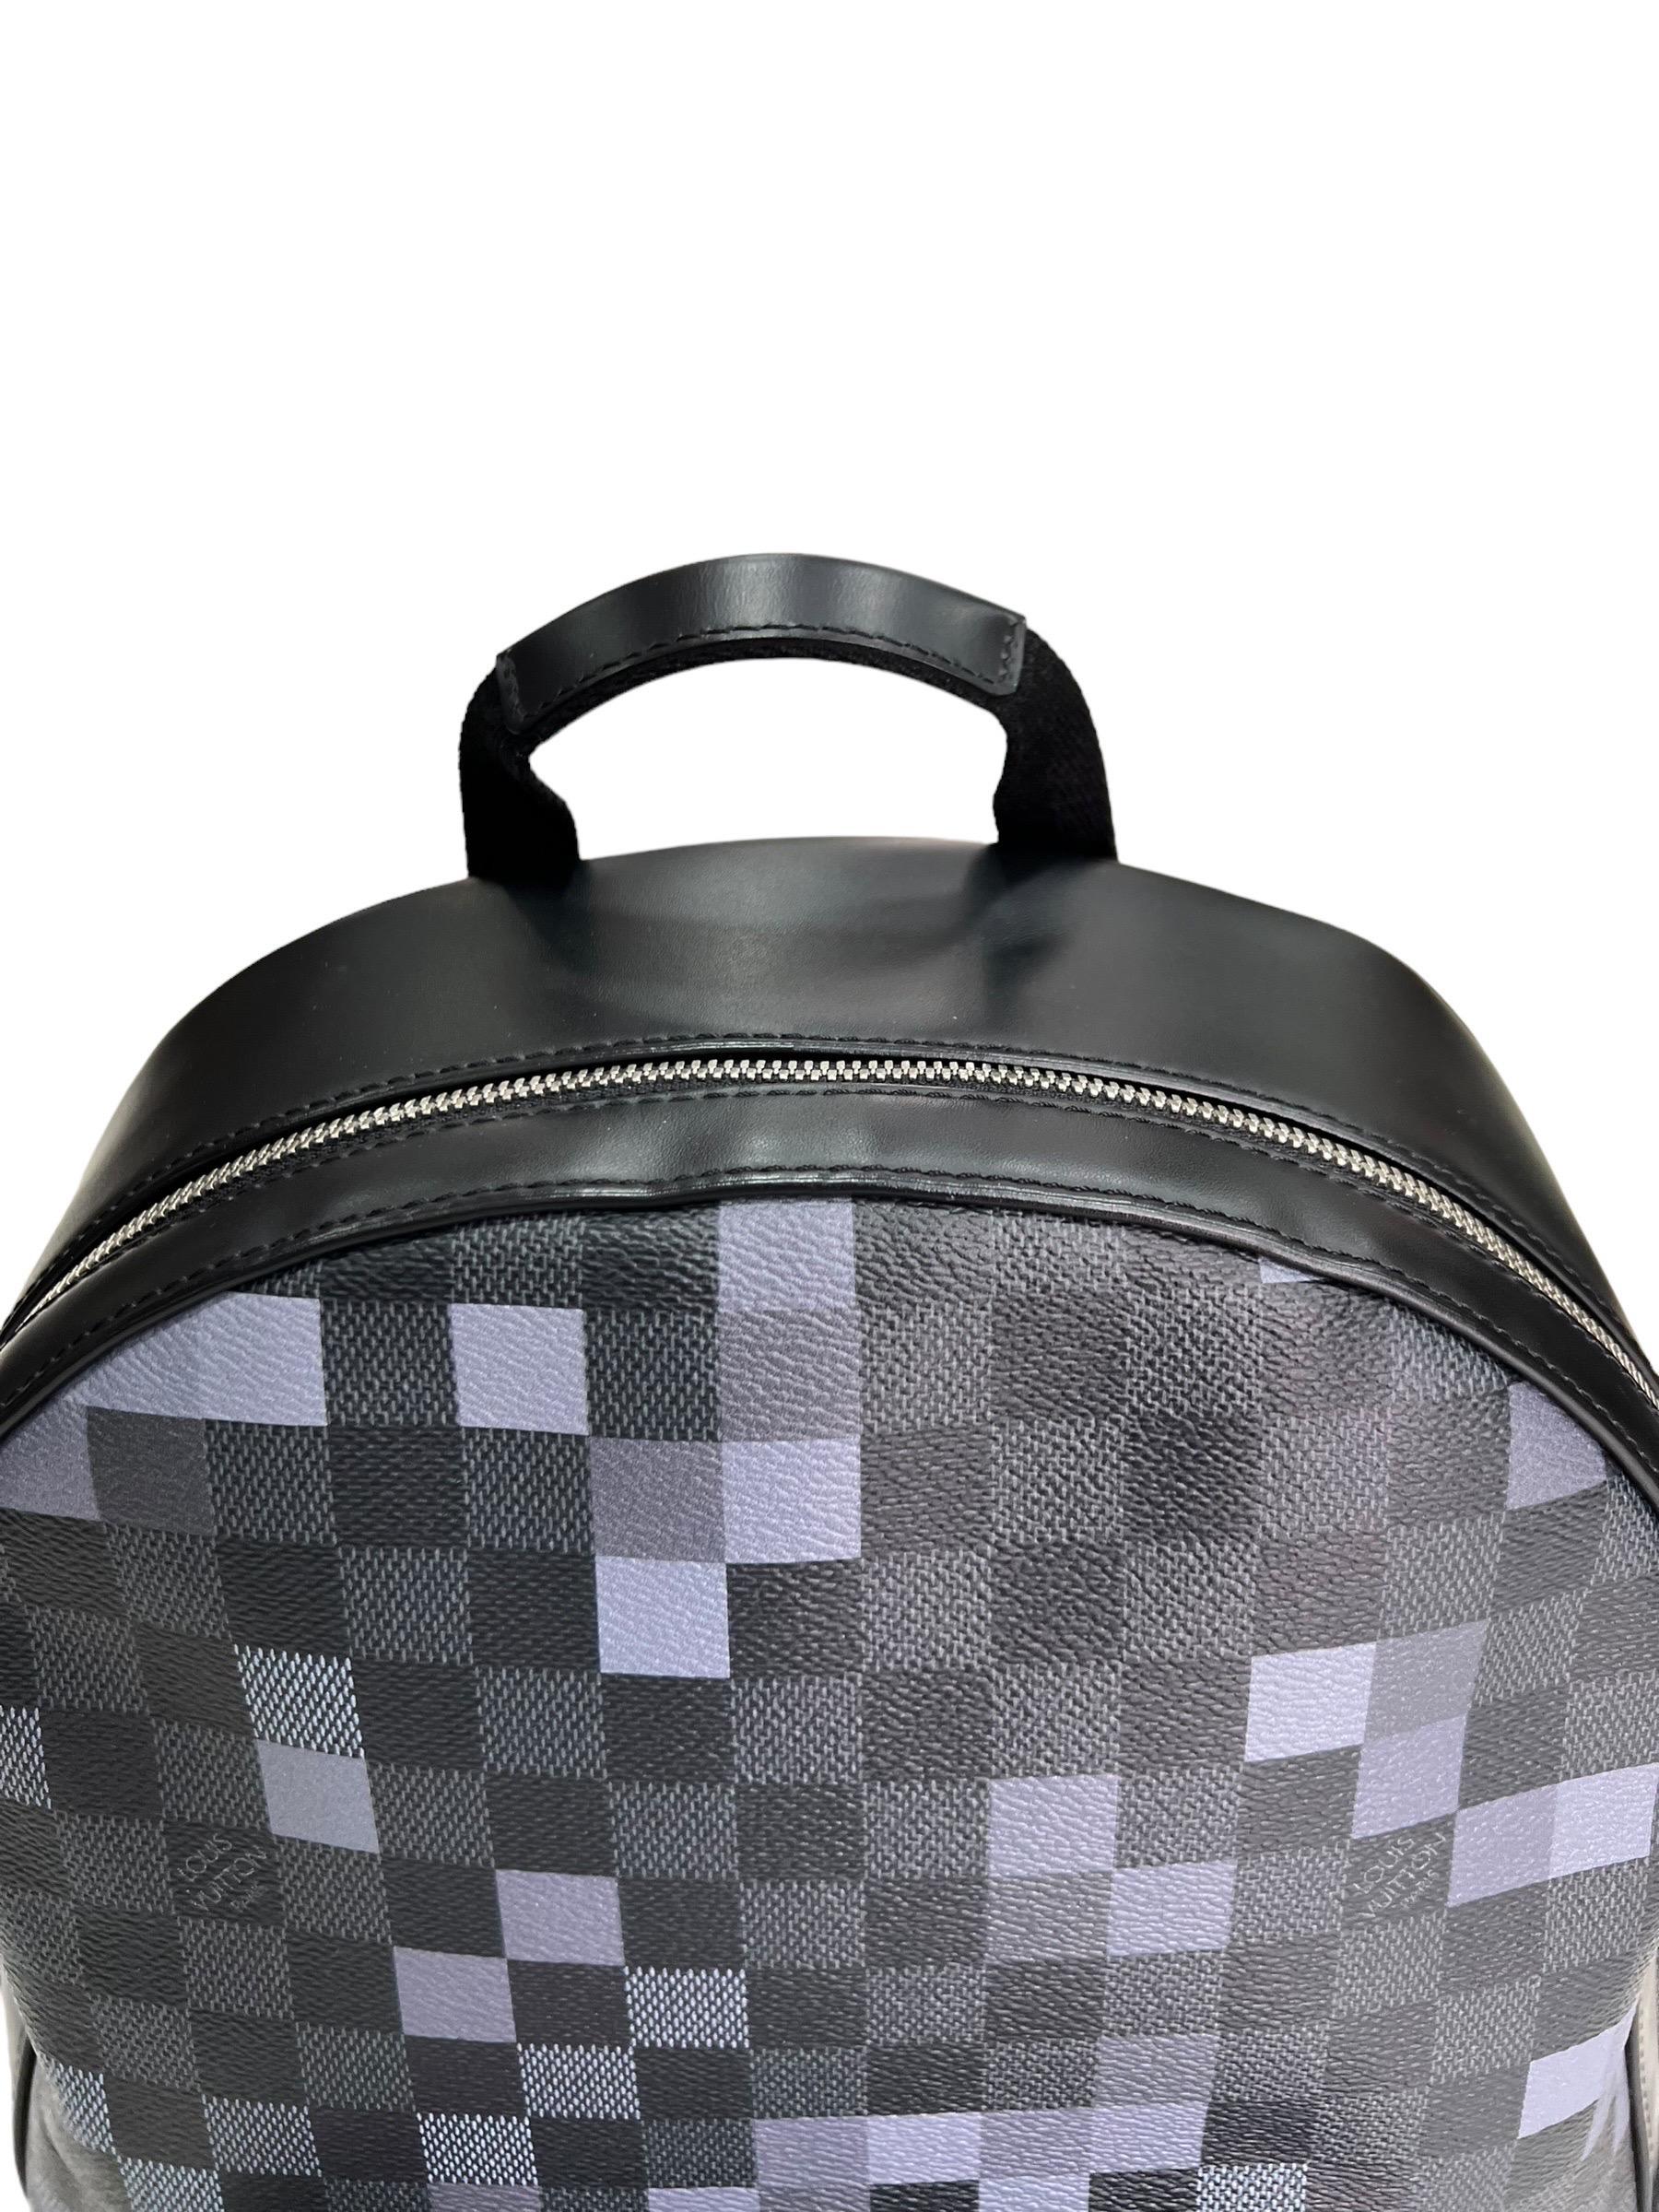 Zaino firmato Louis Vuitton, modello Josh Pixel, misura GM, realizzato in tela Damier Graphite con inserti in pelle nera e hardware argentati. Dotata di una chiusura superiore con zip, internamente rivestita in tessuto nero, abbastanza capiente.